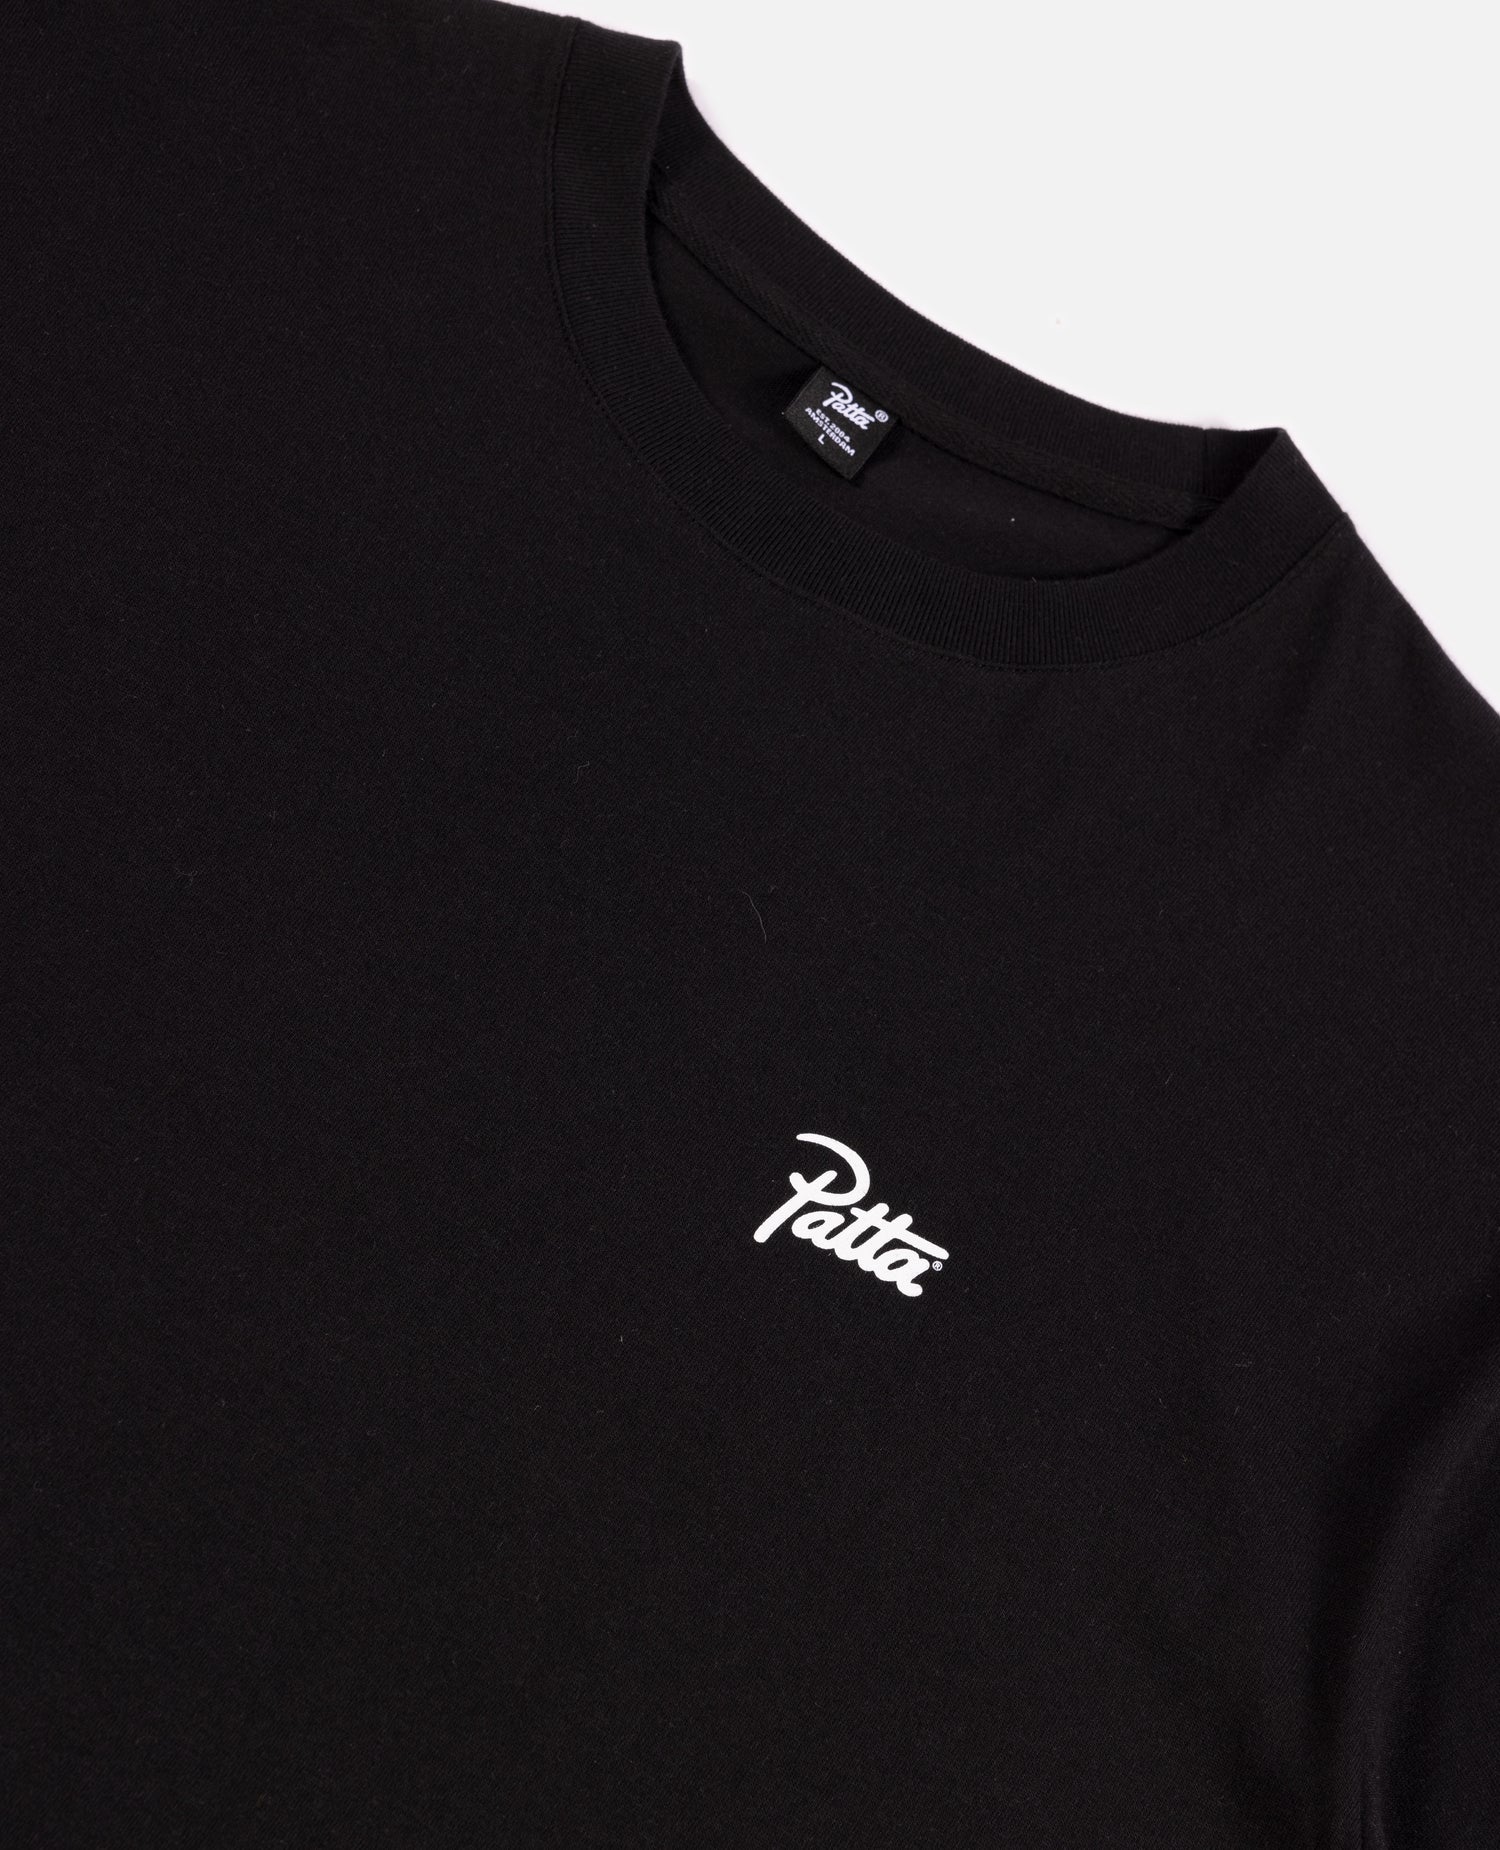 Patta Revolution T-Shirt (Black) – Patta UK